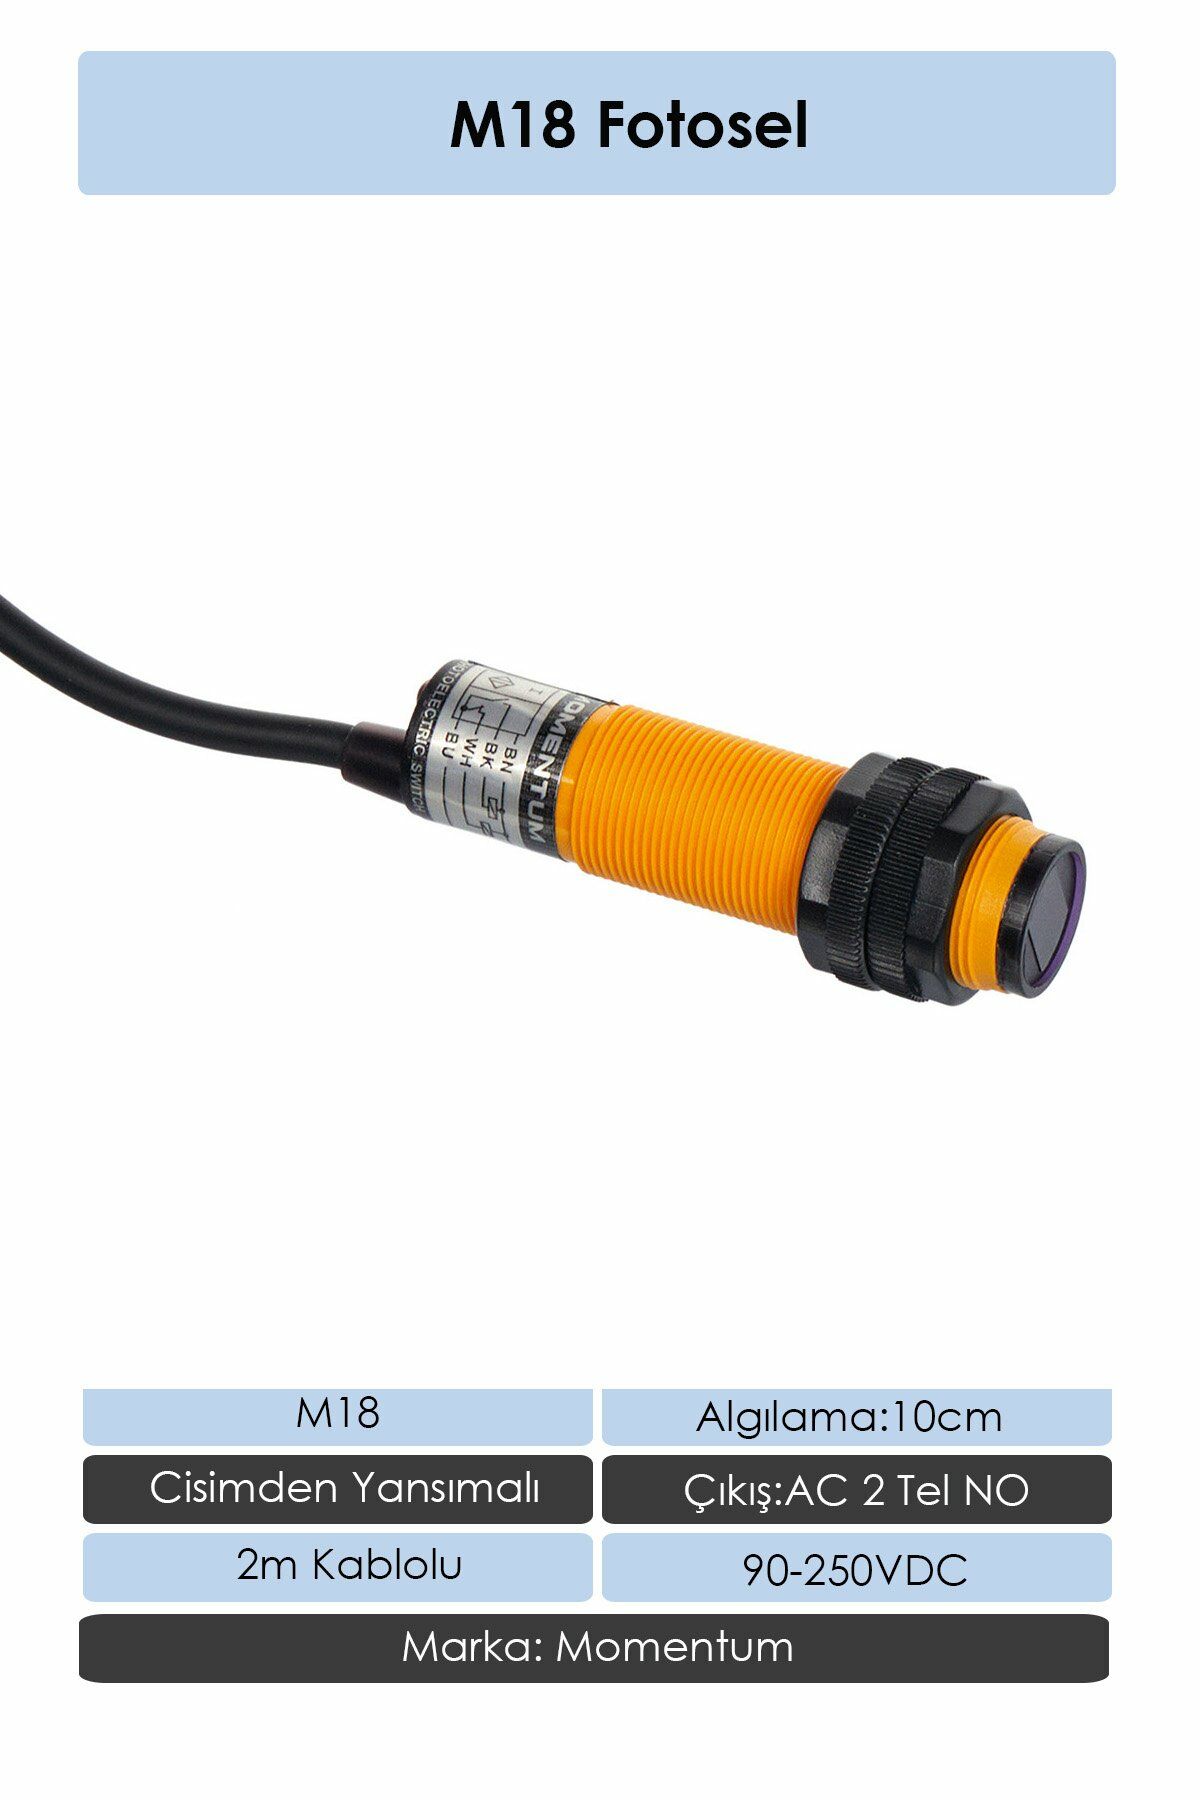 Momentum Fotosel M18 10cm Cisimden 2m Kablo AC 2 Tel NO G18-2A10A